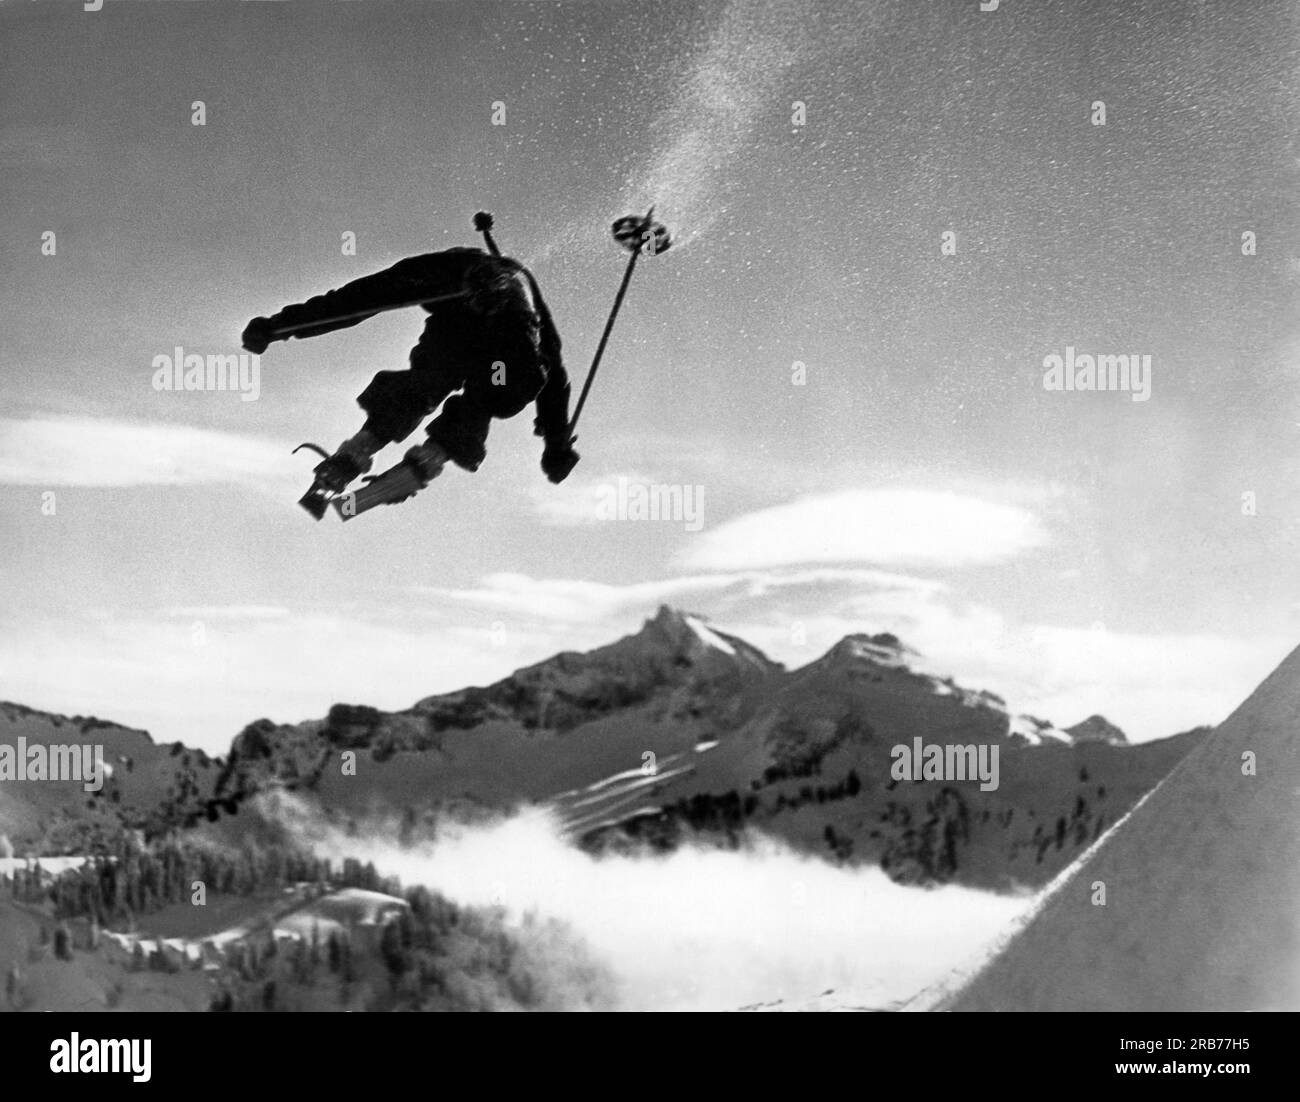 Mount Rainier, Washington : 5 janvier 1935. Hans Grage, un espoir olympique, semble sauter juste au-dessus du mont. Rainier dans cette photo dramatique. Banque D'Images